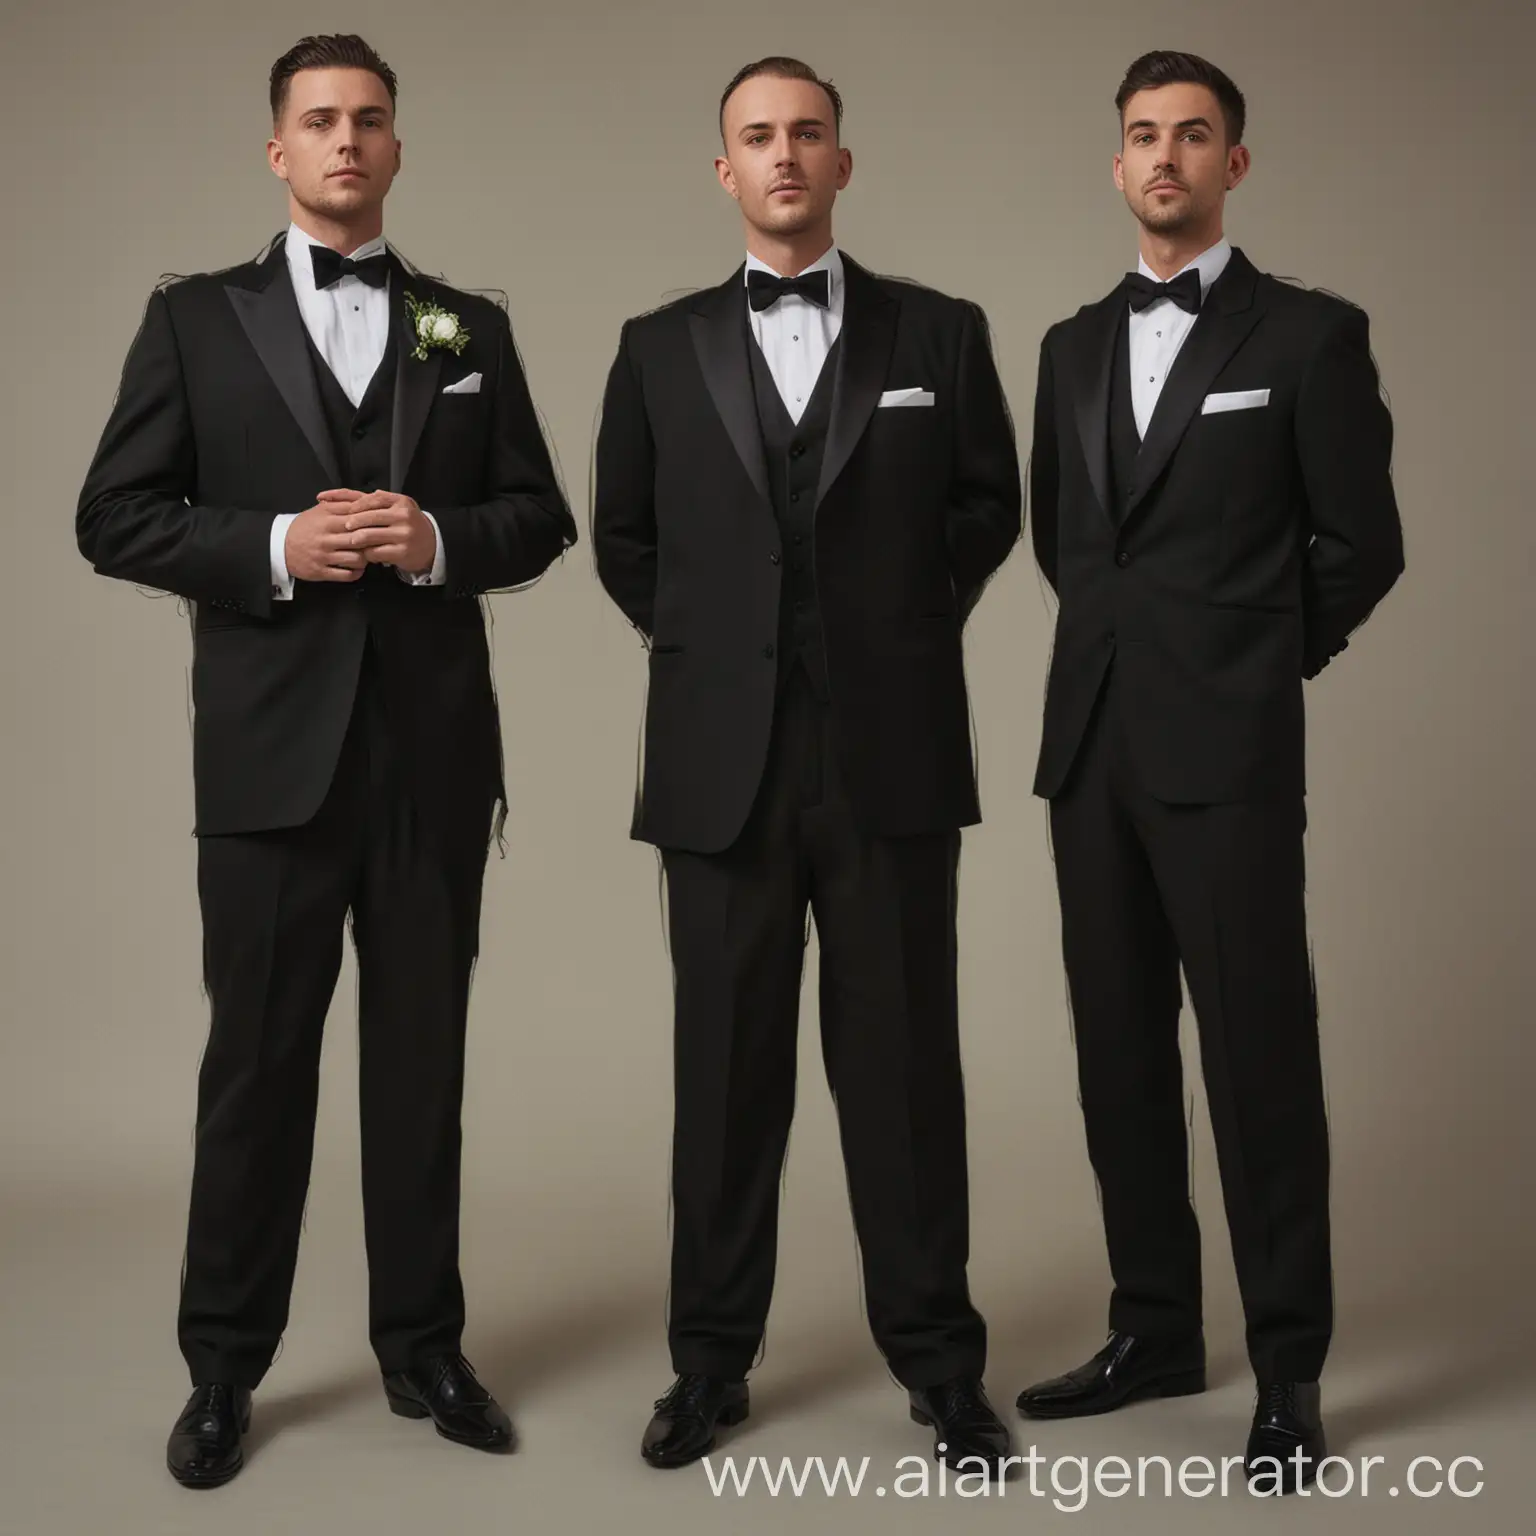 Elegant-Men-in-Tuxedos-Standing-Tall